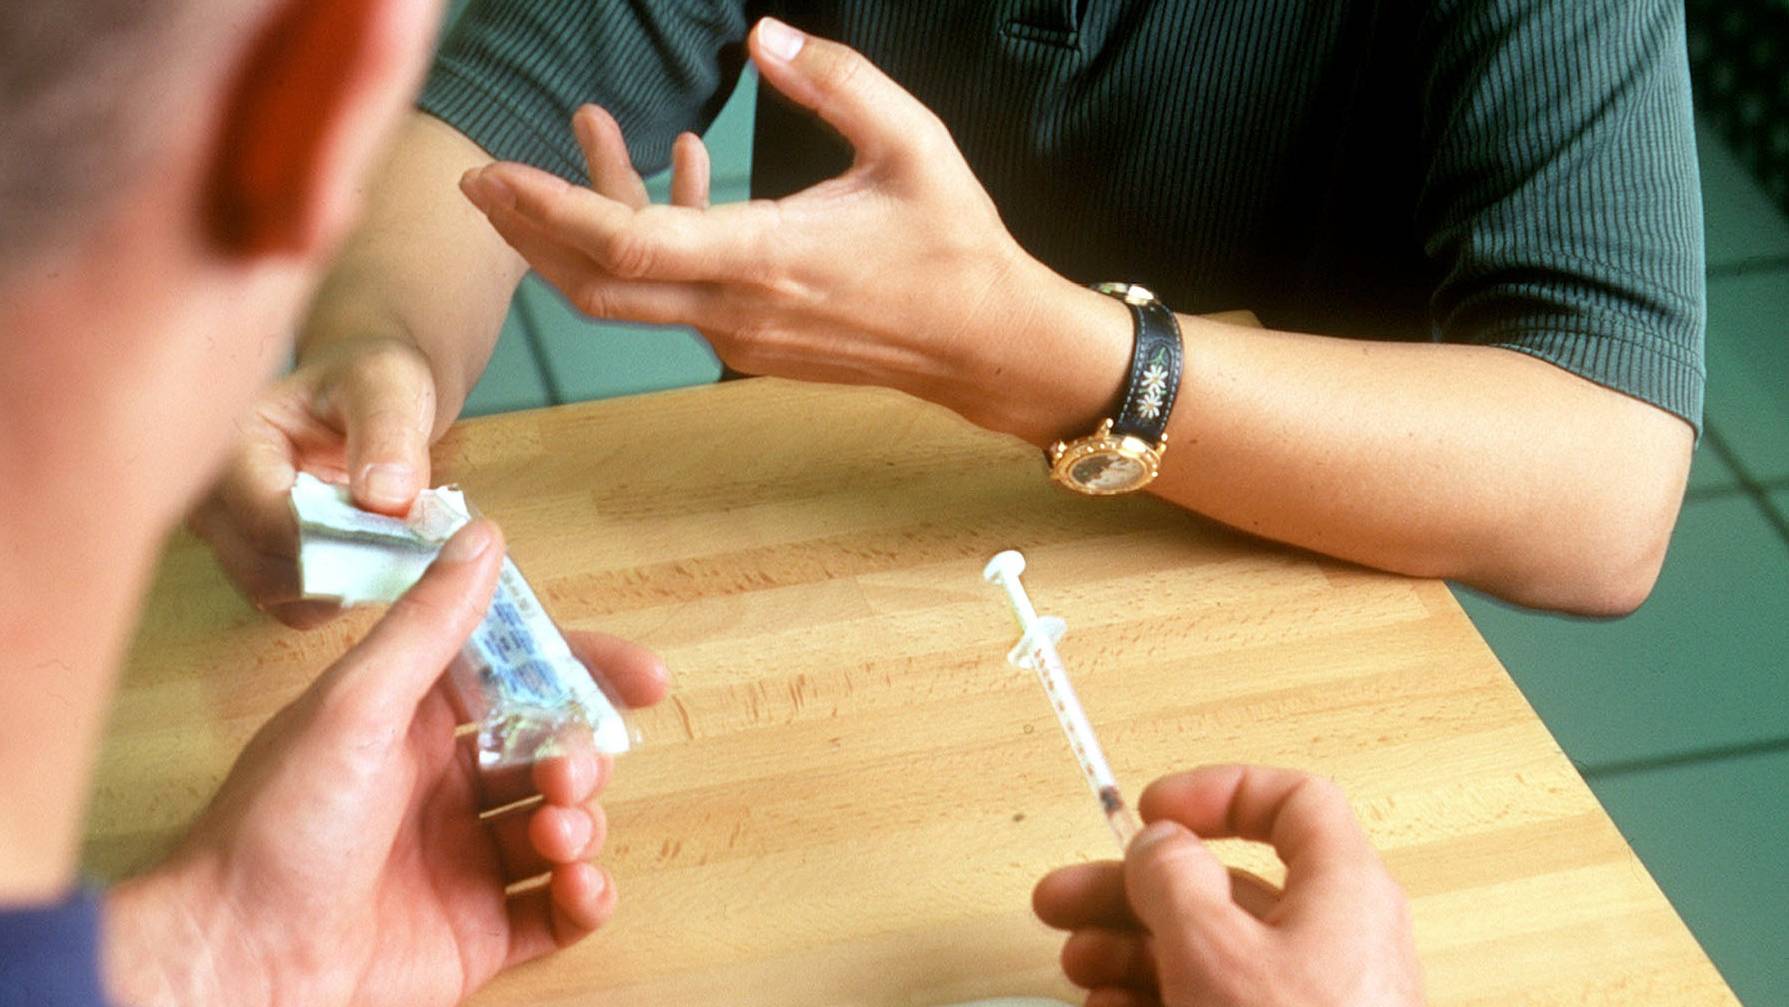 Die Heroinabgabe wird wegen dem Ansteckungsrisiko während der Pandemie vereinfacht.